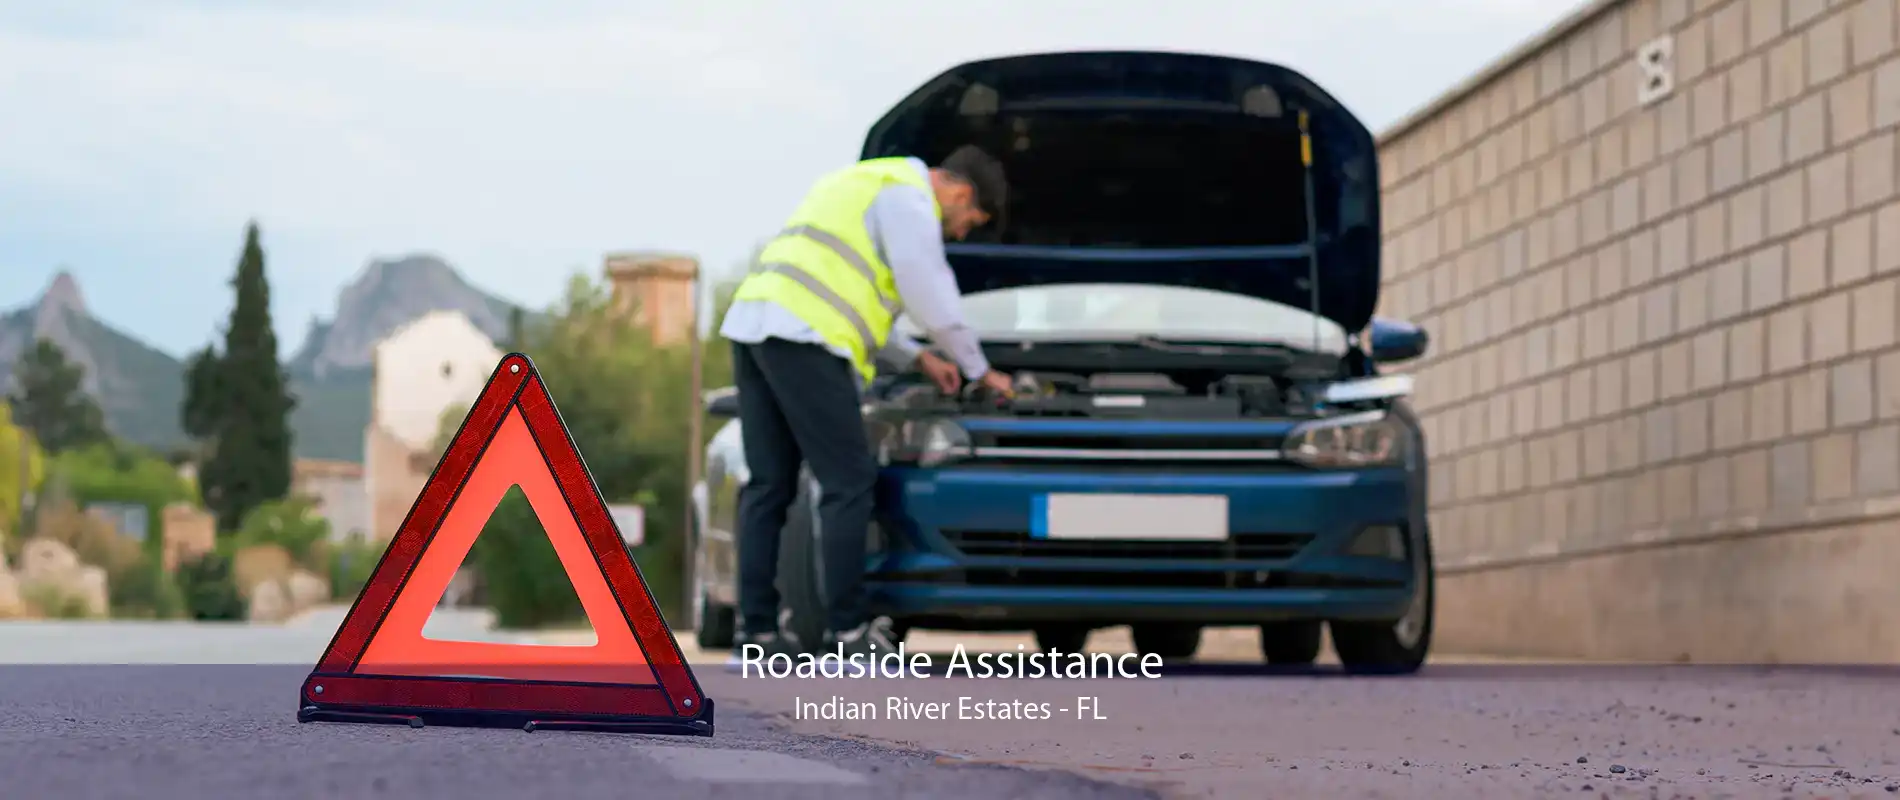 Roadside Assistance Indian River Estates - FL